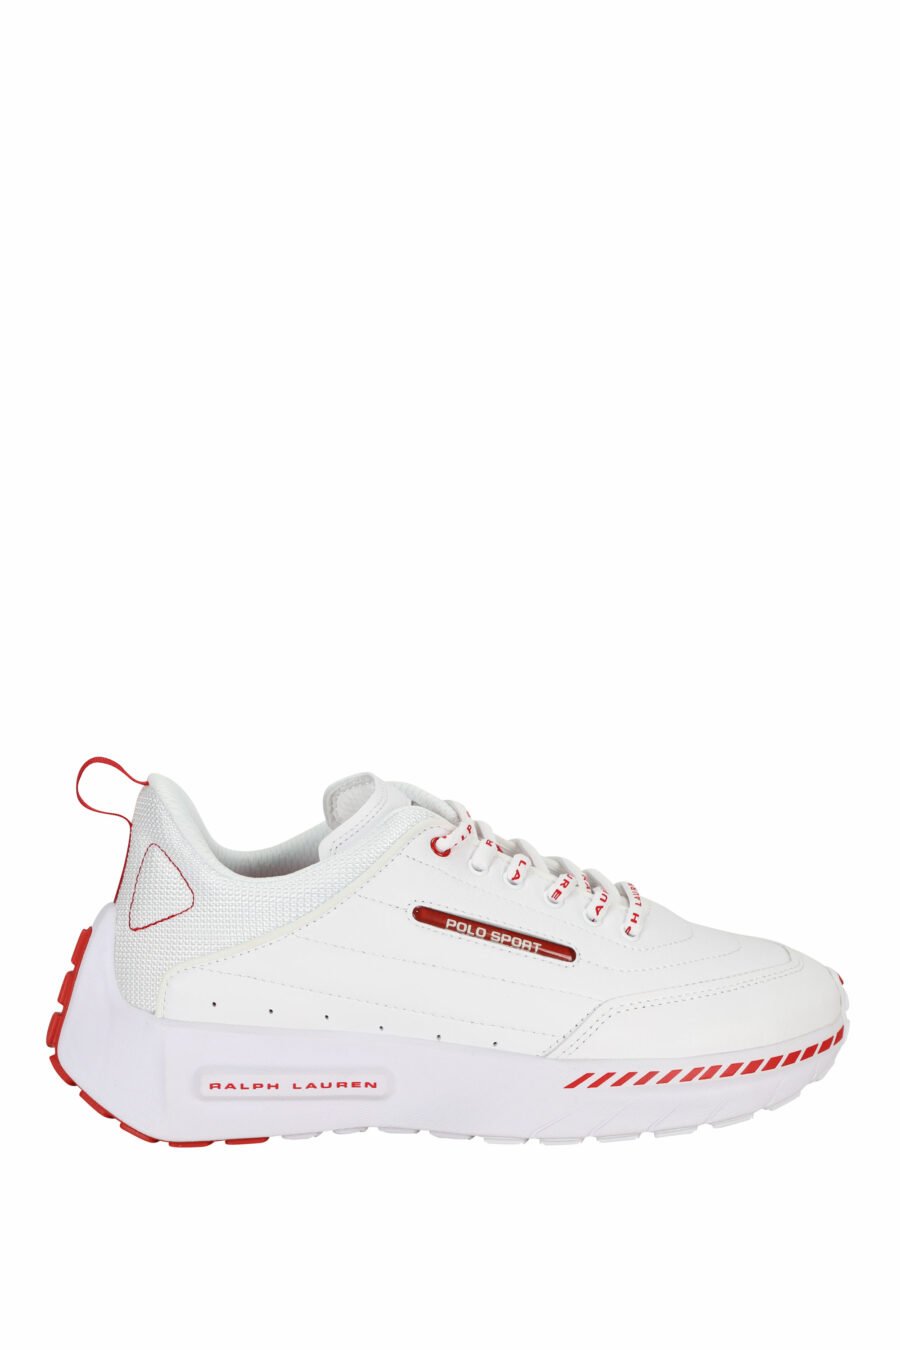 Zapatillas blancas con minilogo y detalles rojos - 3616535649279